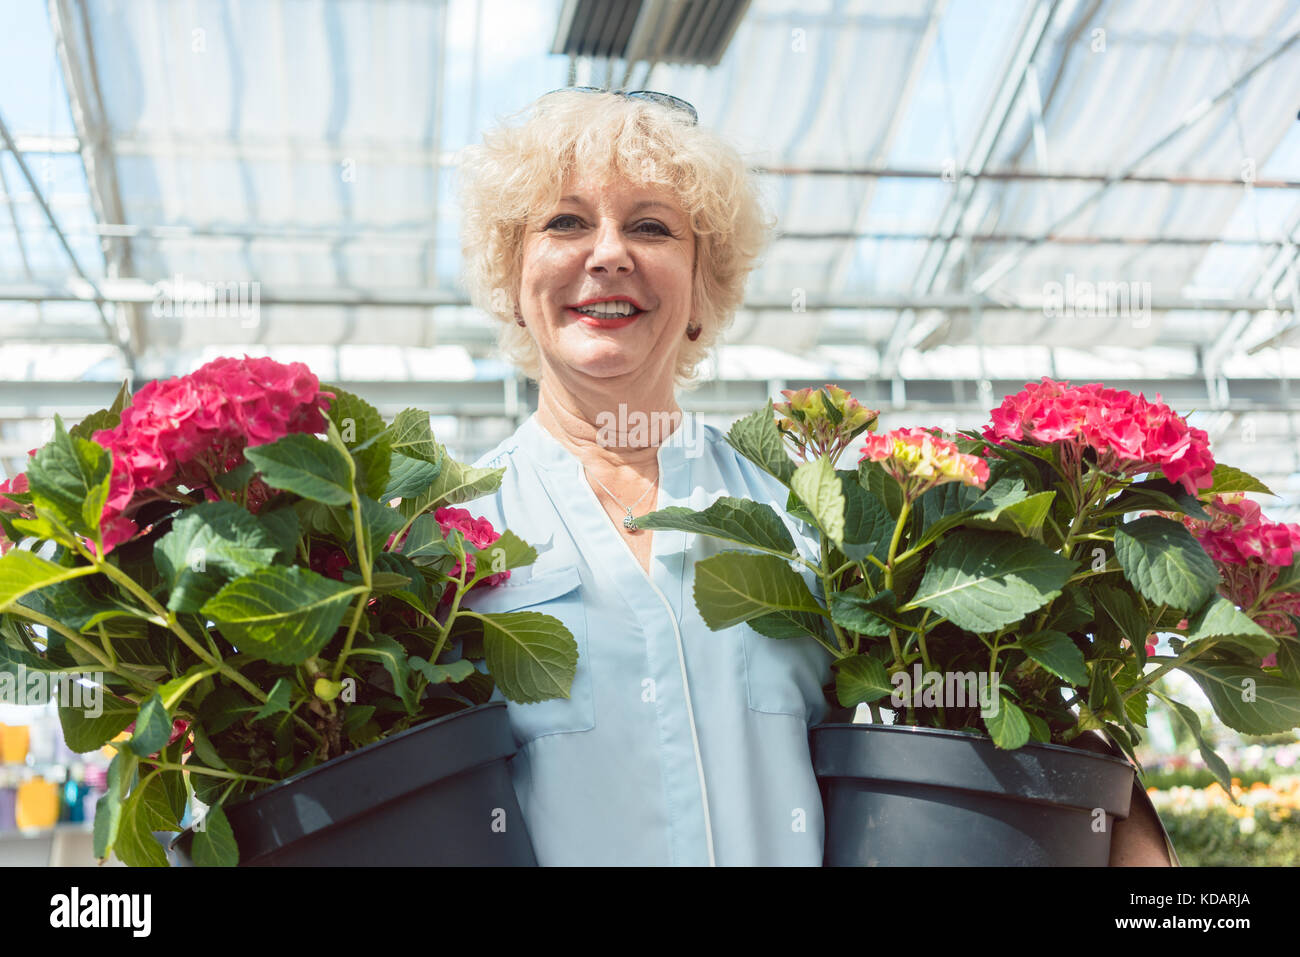 Portrait d'une active senior woman holding potted plantes ornementales Banque D'Images